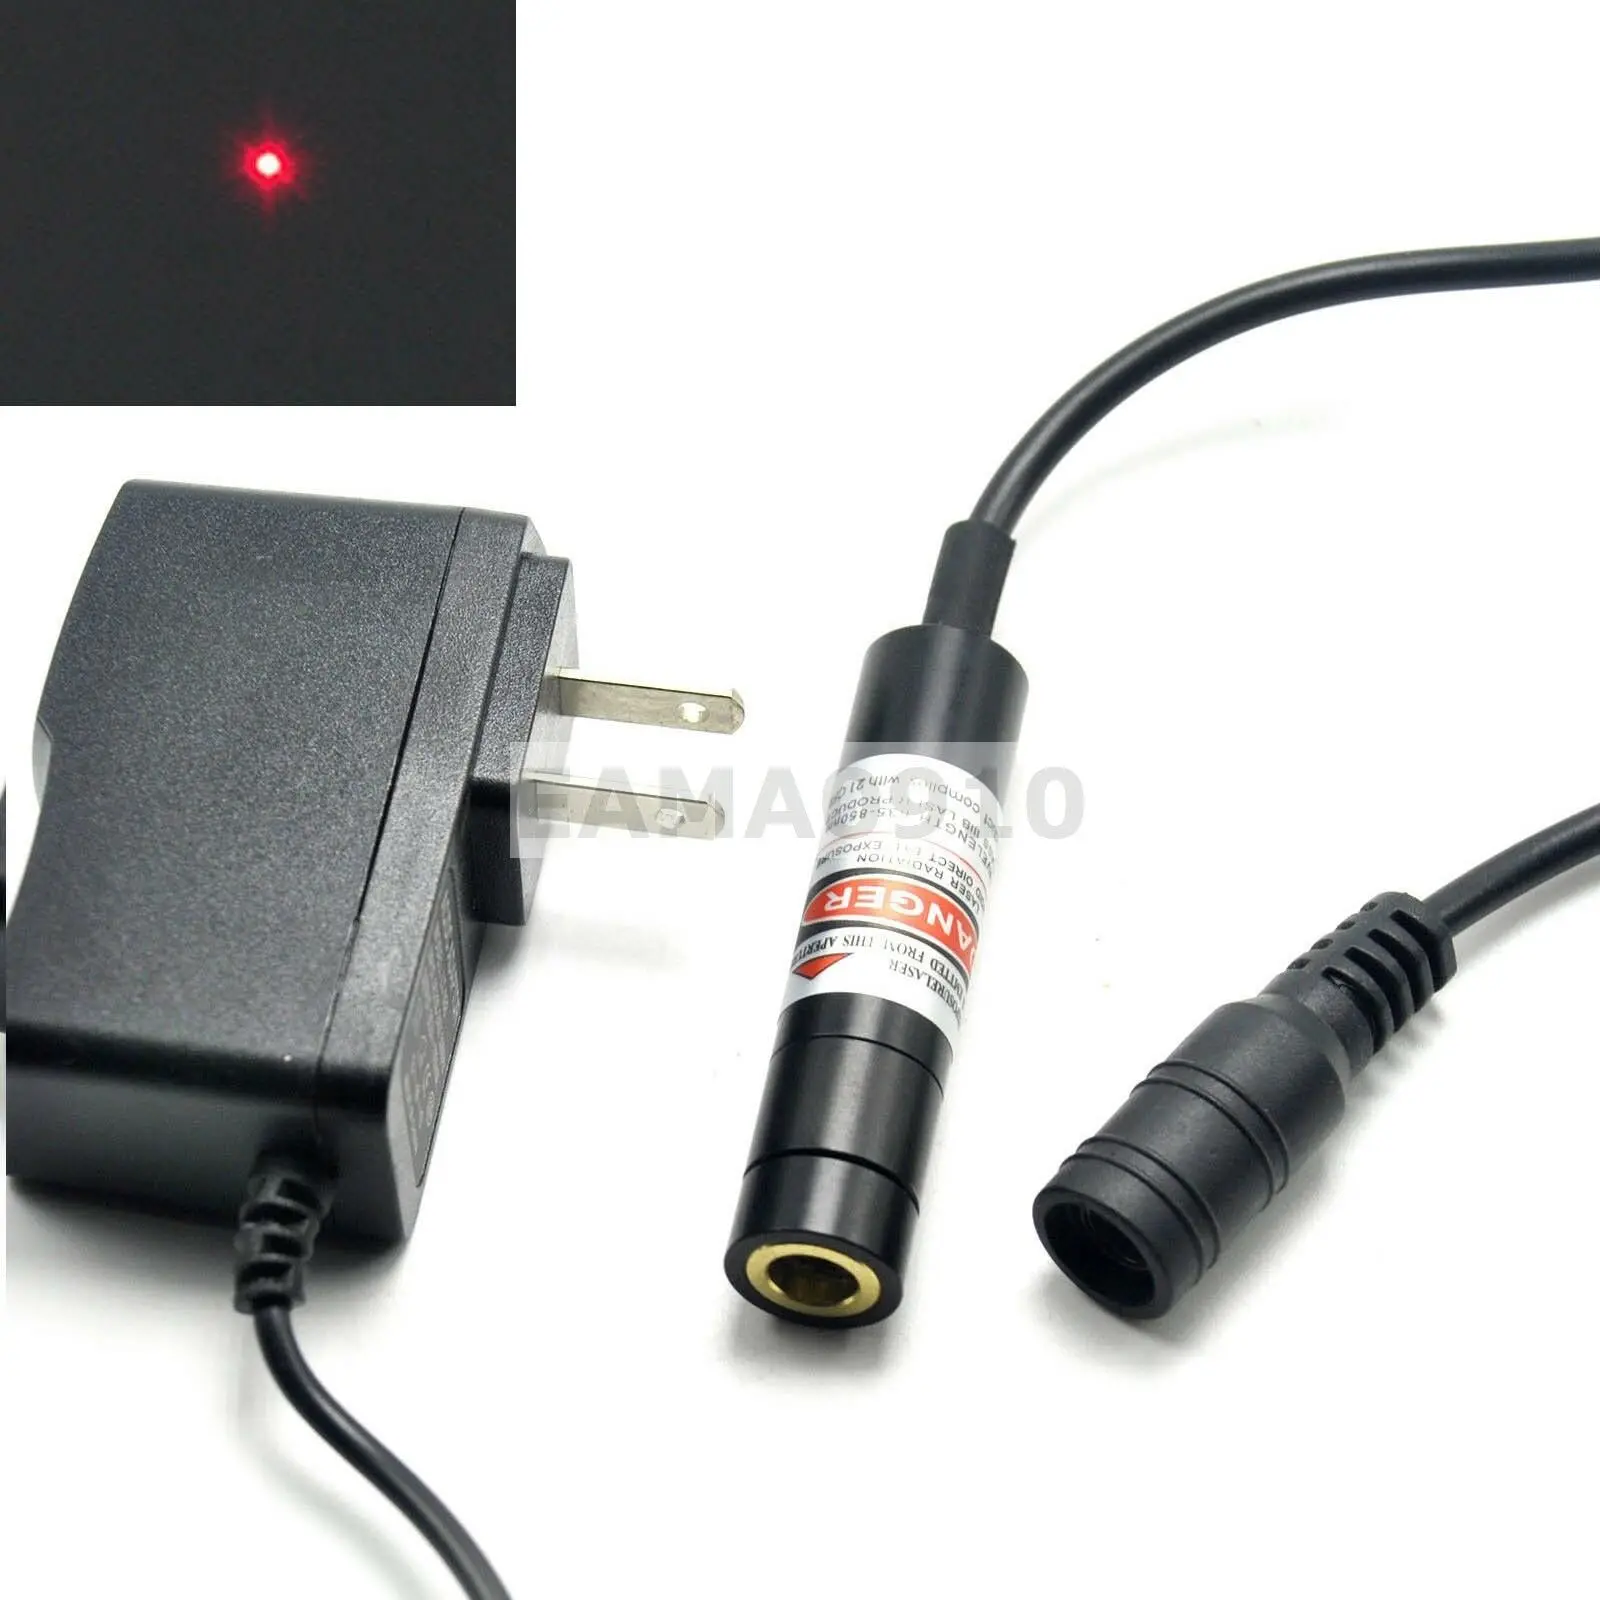 Luz laser vermelha 60 nm 12x55mm com adaptador, placa de aquecimento, luz que pode ser feita em aparelho celular